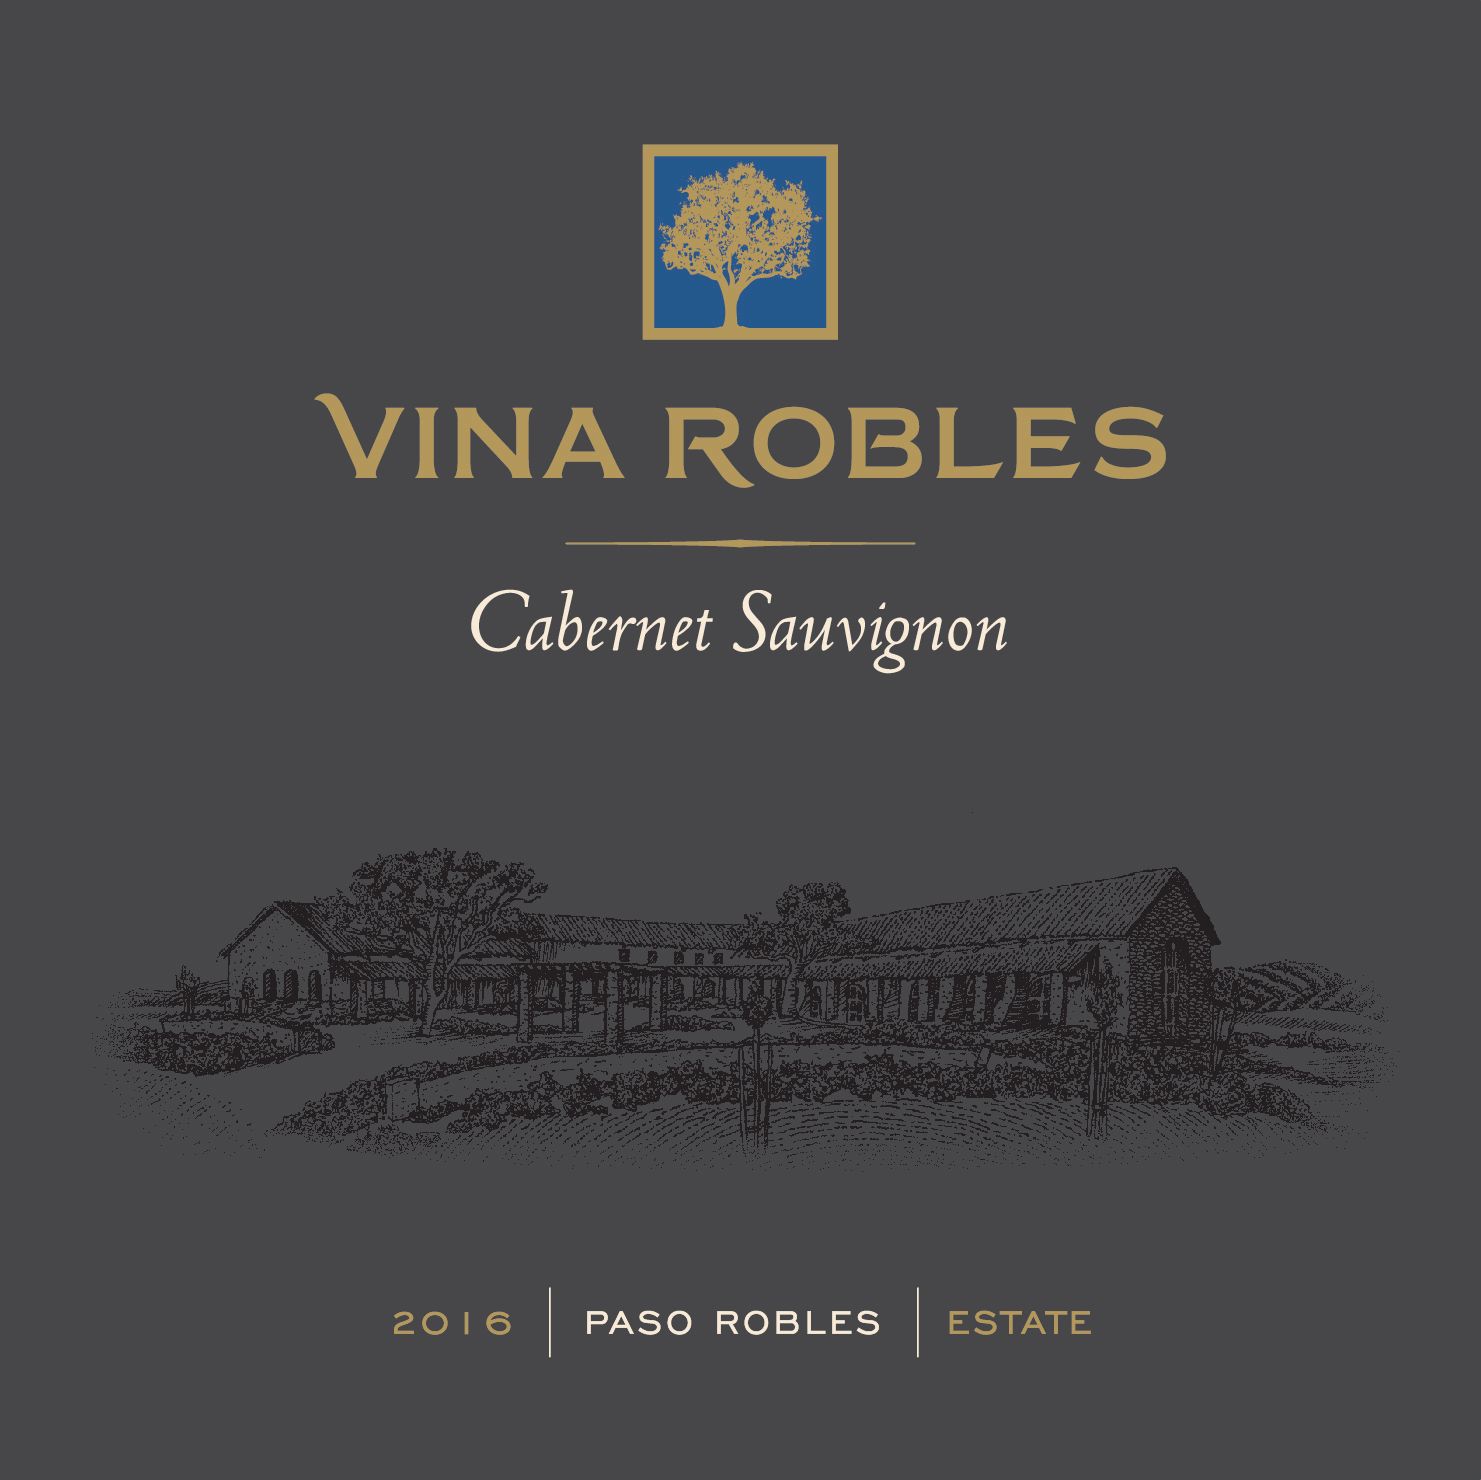 Vina Robles Estate Cabernet Sauvignon 2016